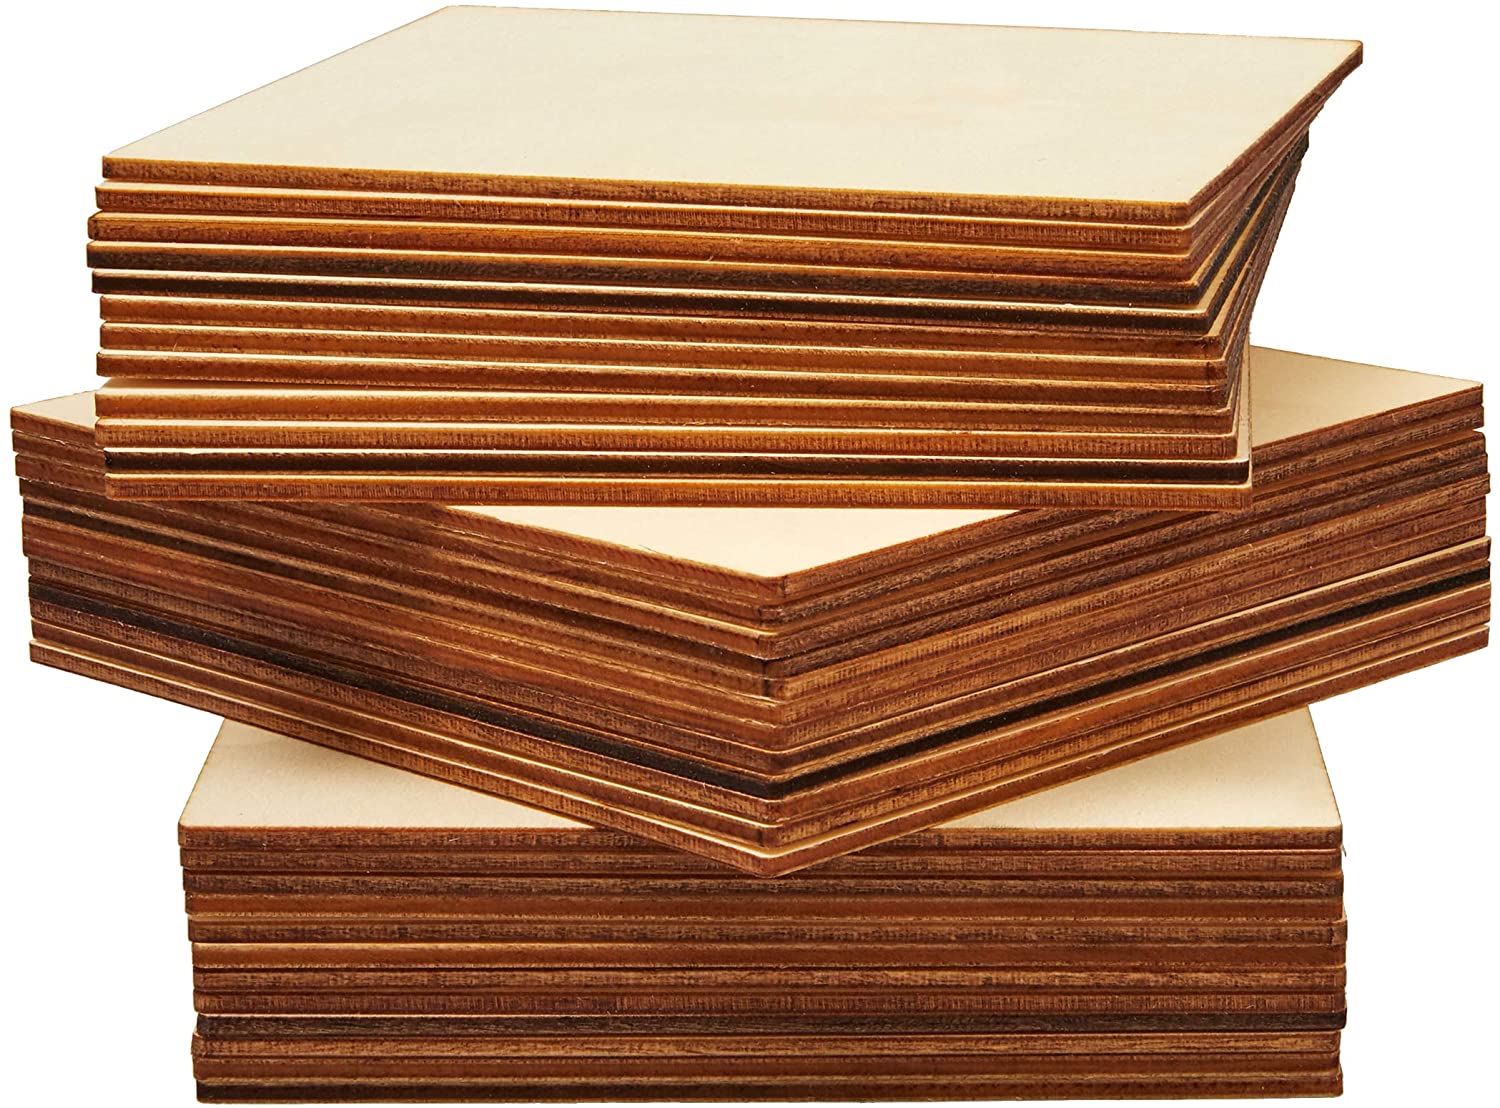 Cuadrados de madera para manualidades, 36 piezas de madera, 3 x 3 pulgadas,  recortes cuadrados de madera sin terminar